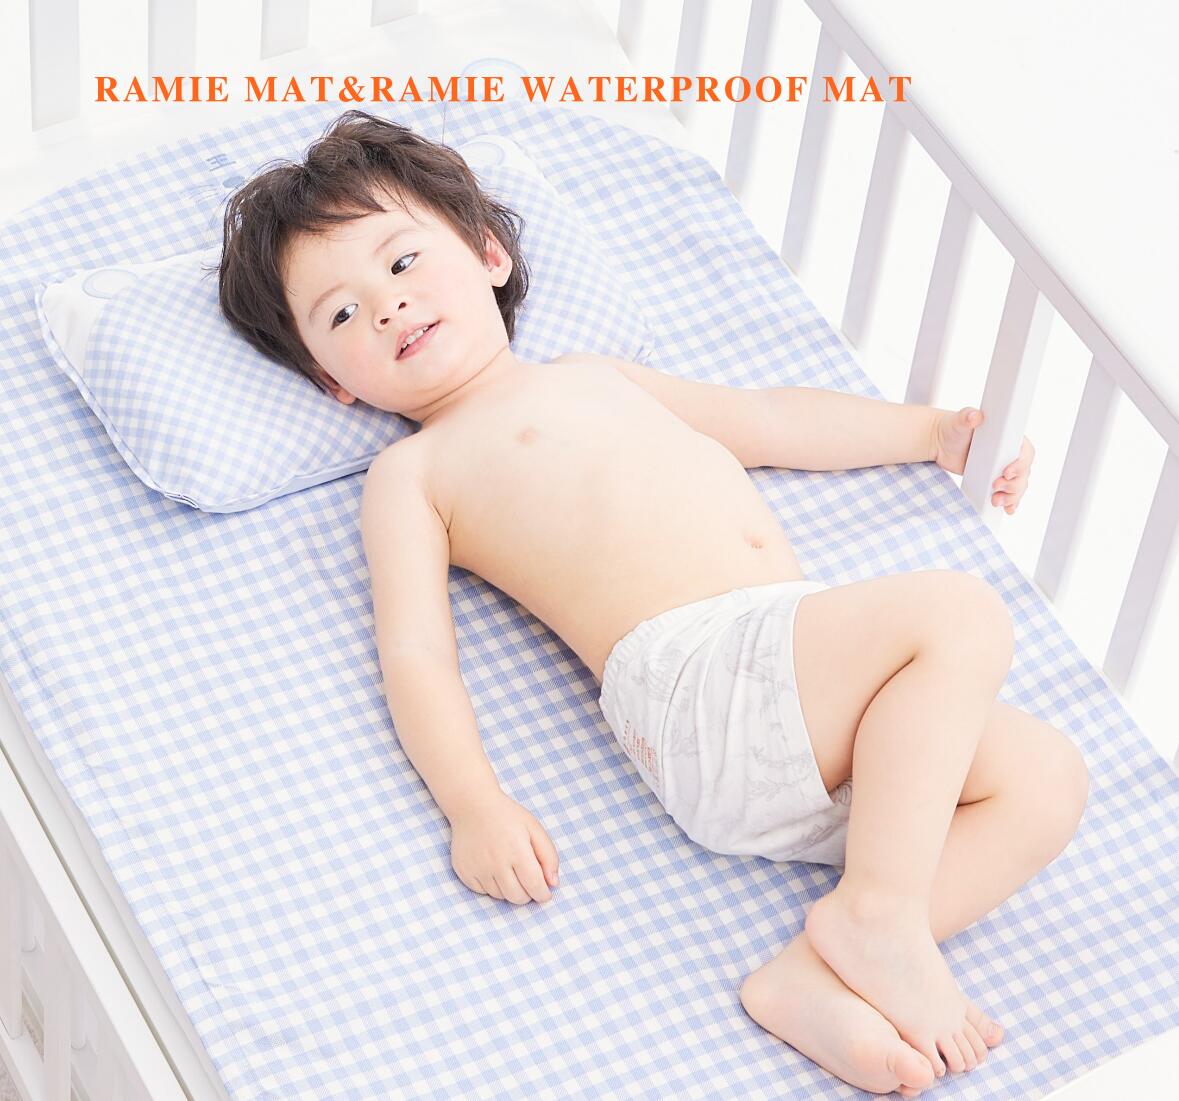 Premium Ramie Mat for Natural Comfort